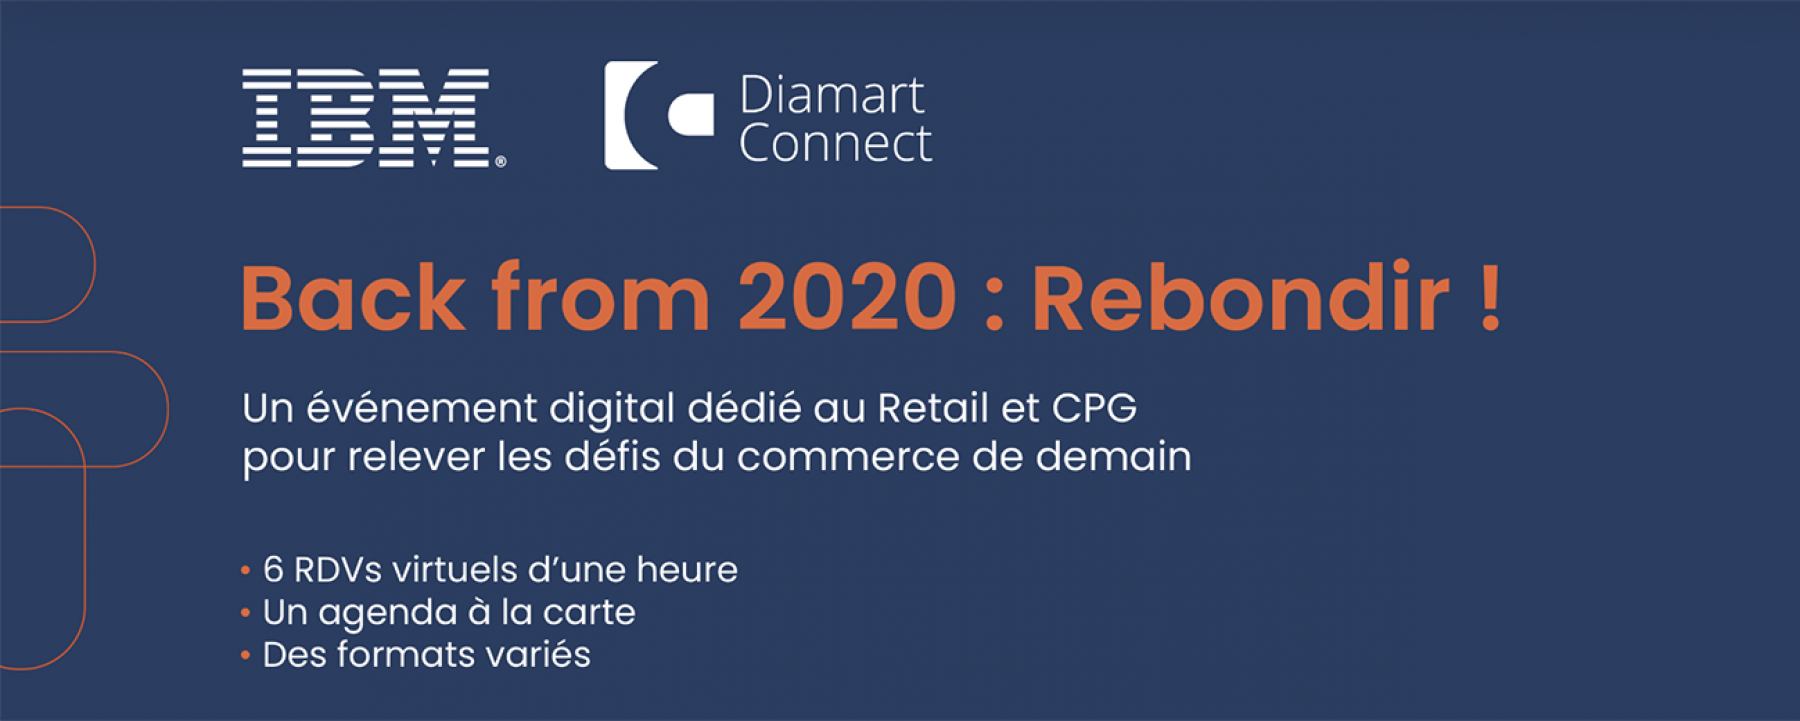 Back from 2020 : Rebondir ! organisé par Diamart Group et IBM du 23 au 26 mars 2021